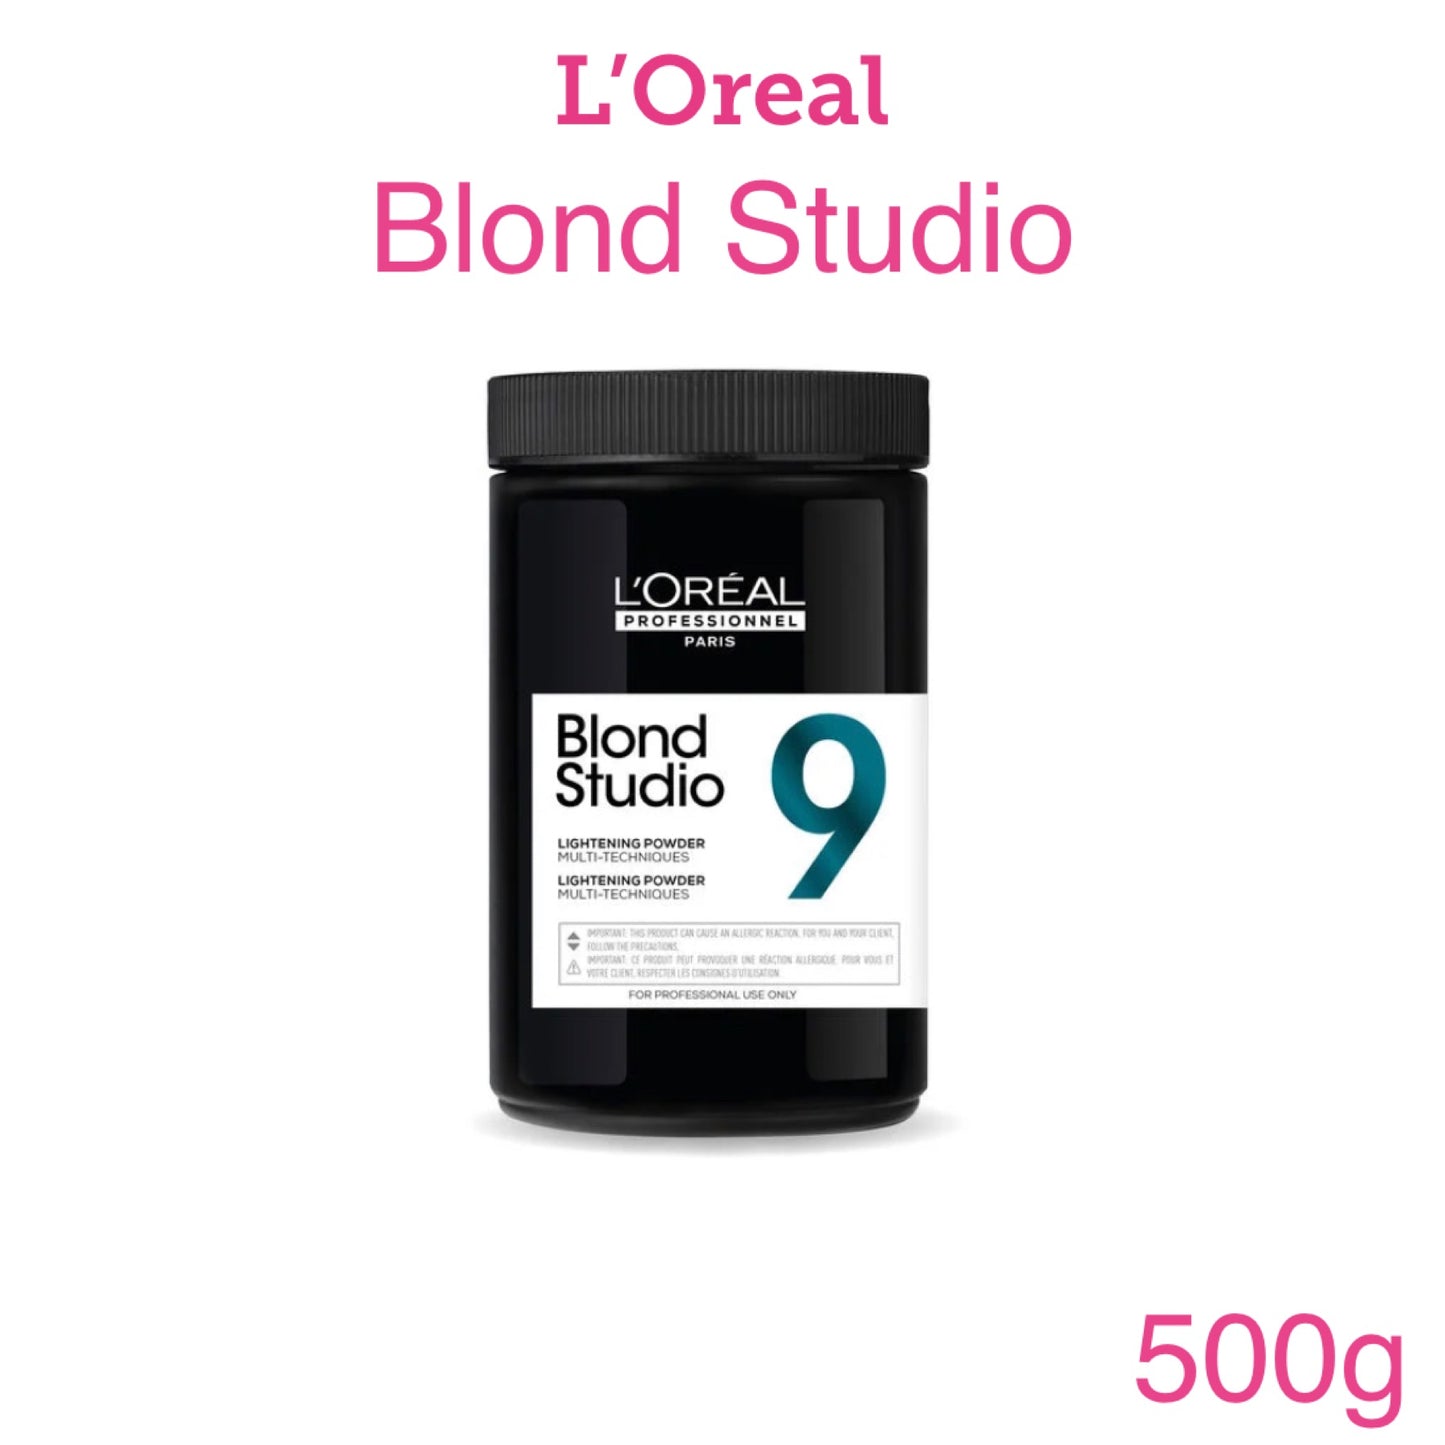 L’Oreal Blond Studio MT 9 500g Upto 9 Levels of Lift